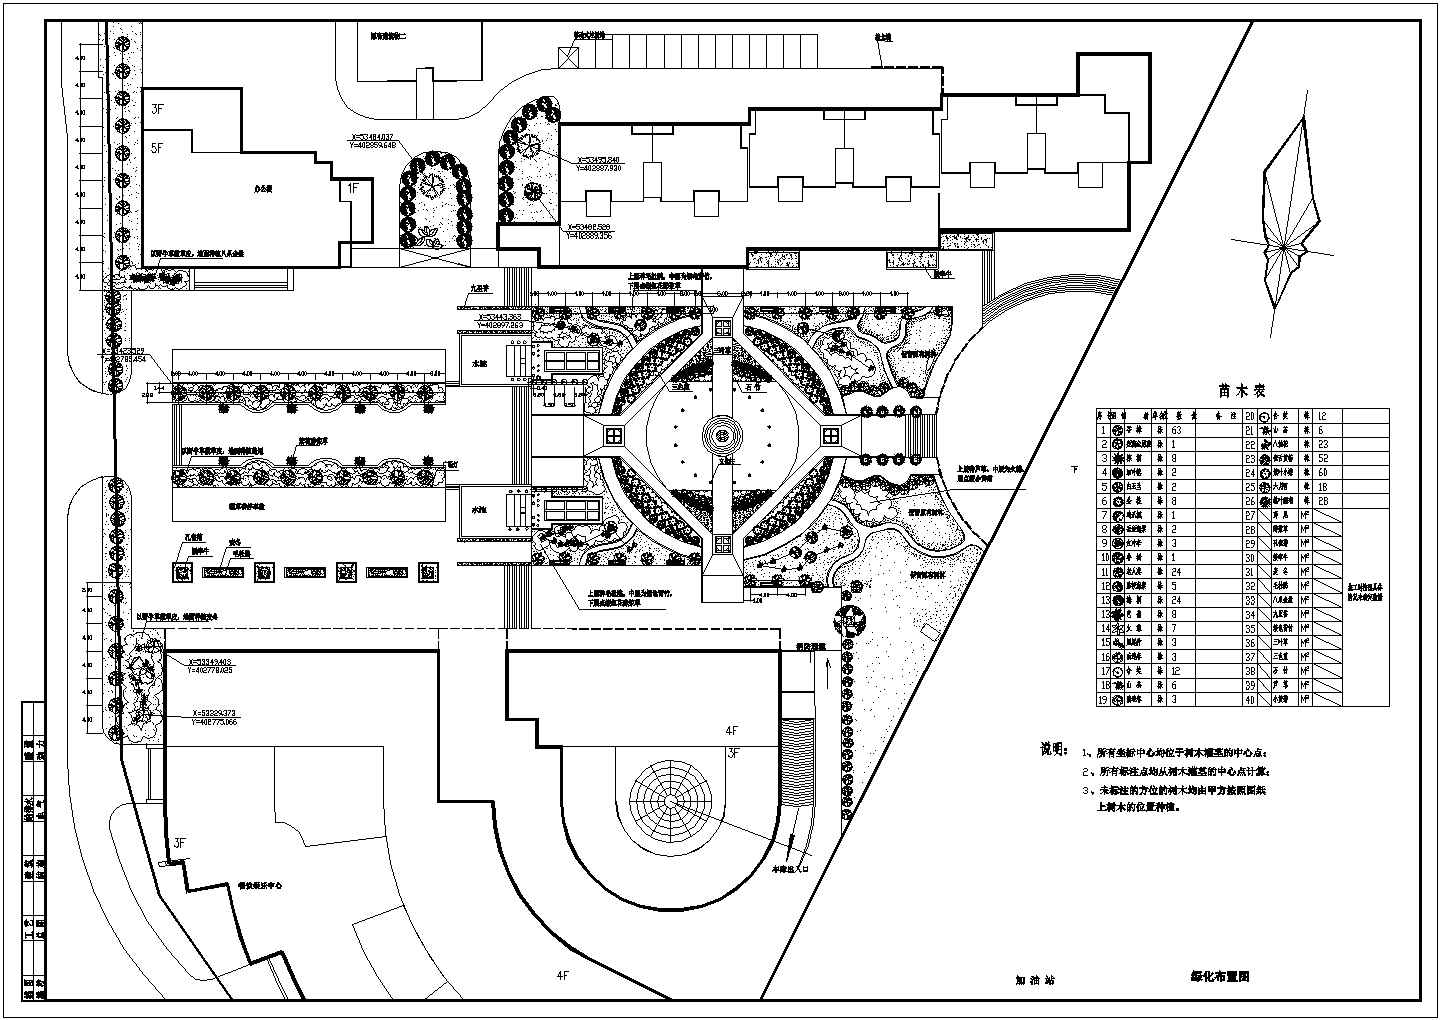 某文化中心综合广场总体绿化布置规划设计施工CAD图纸